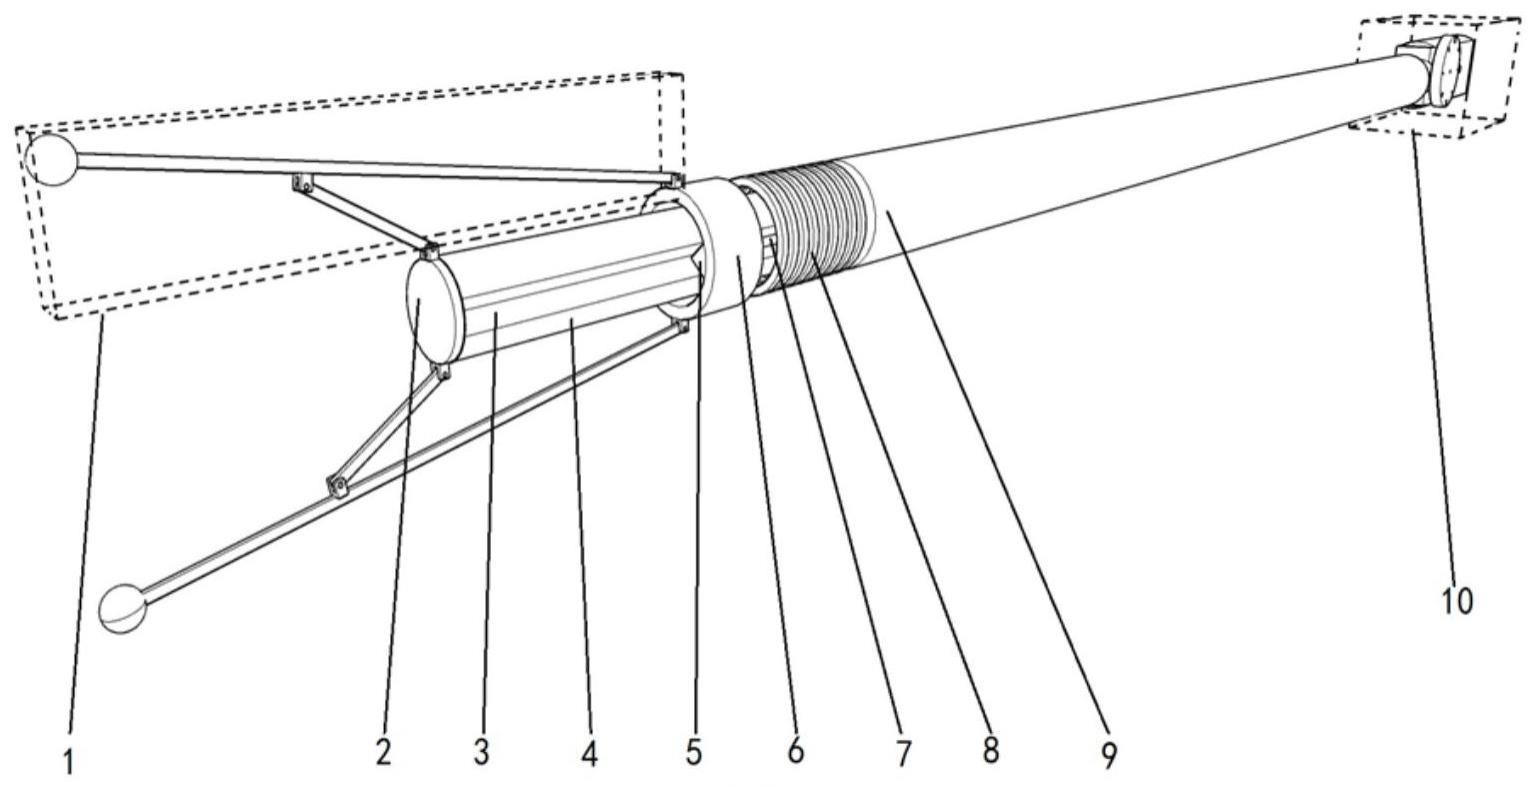 一种适配于气管镜的伞骨式管腔内径测量装置